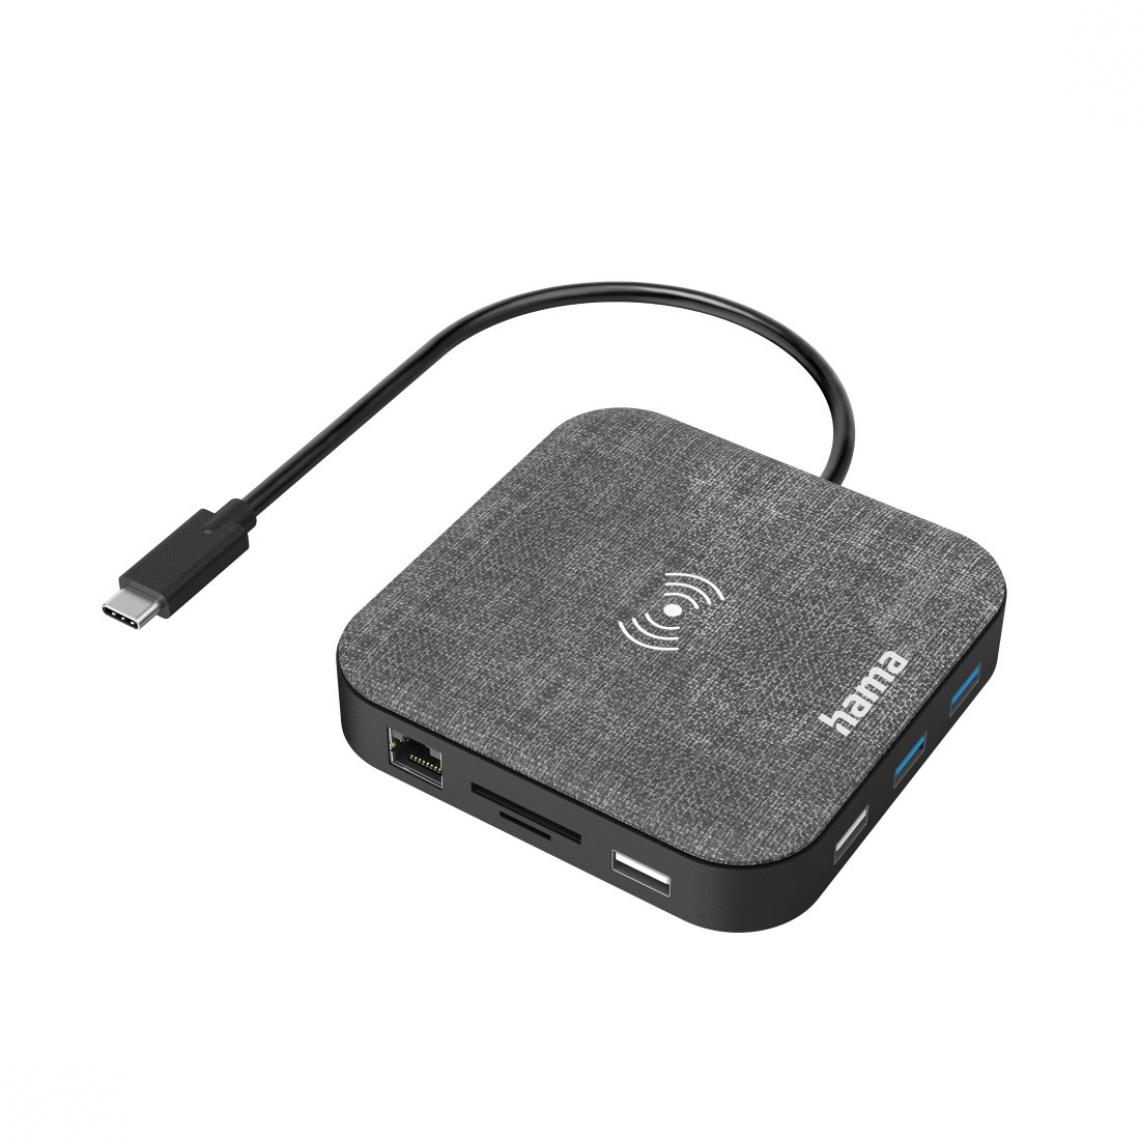 Hama - Hub USB-C, multiport avec chargement sans fil Qi, 12 ports - Hub